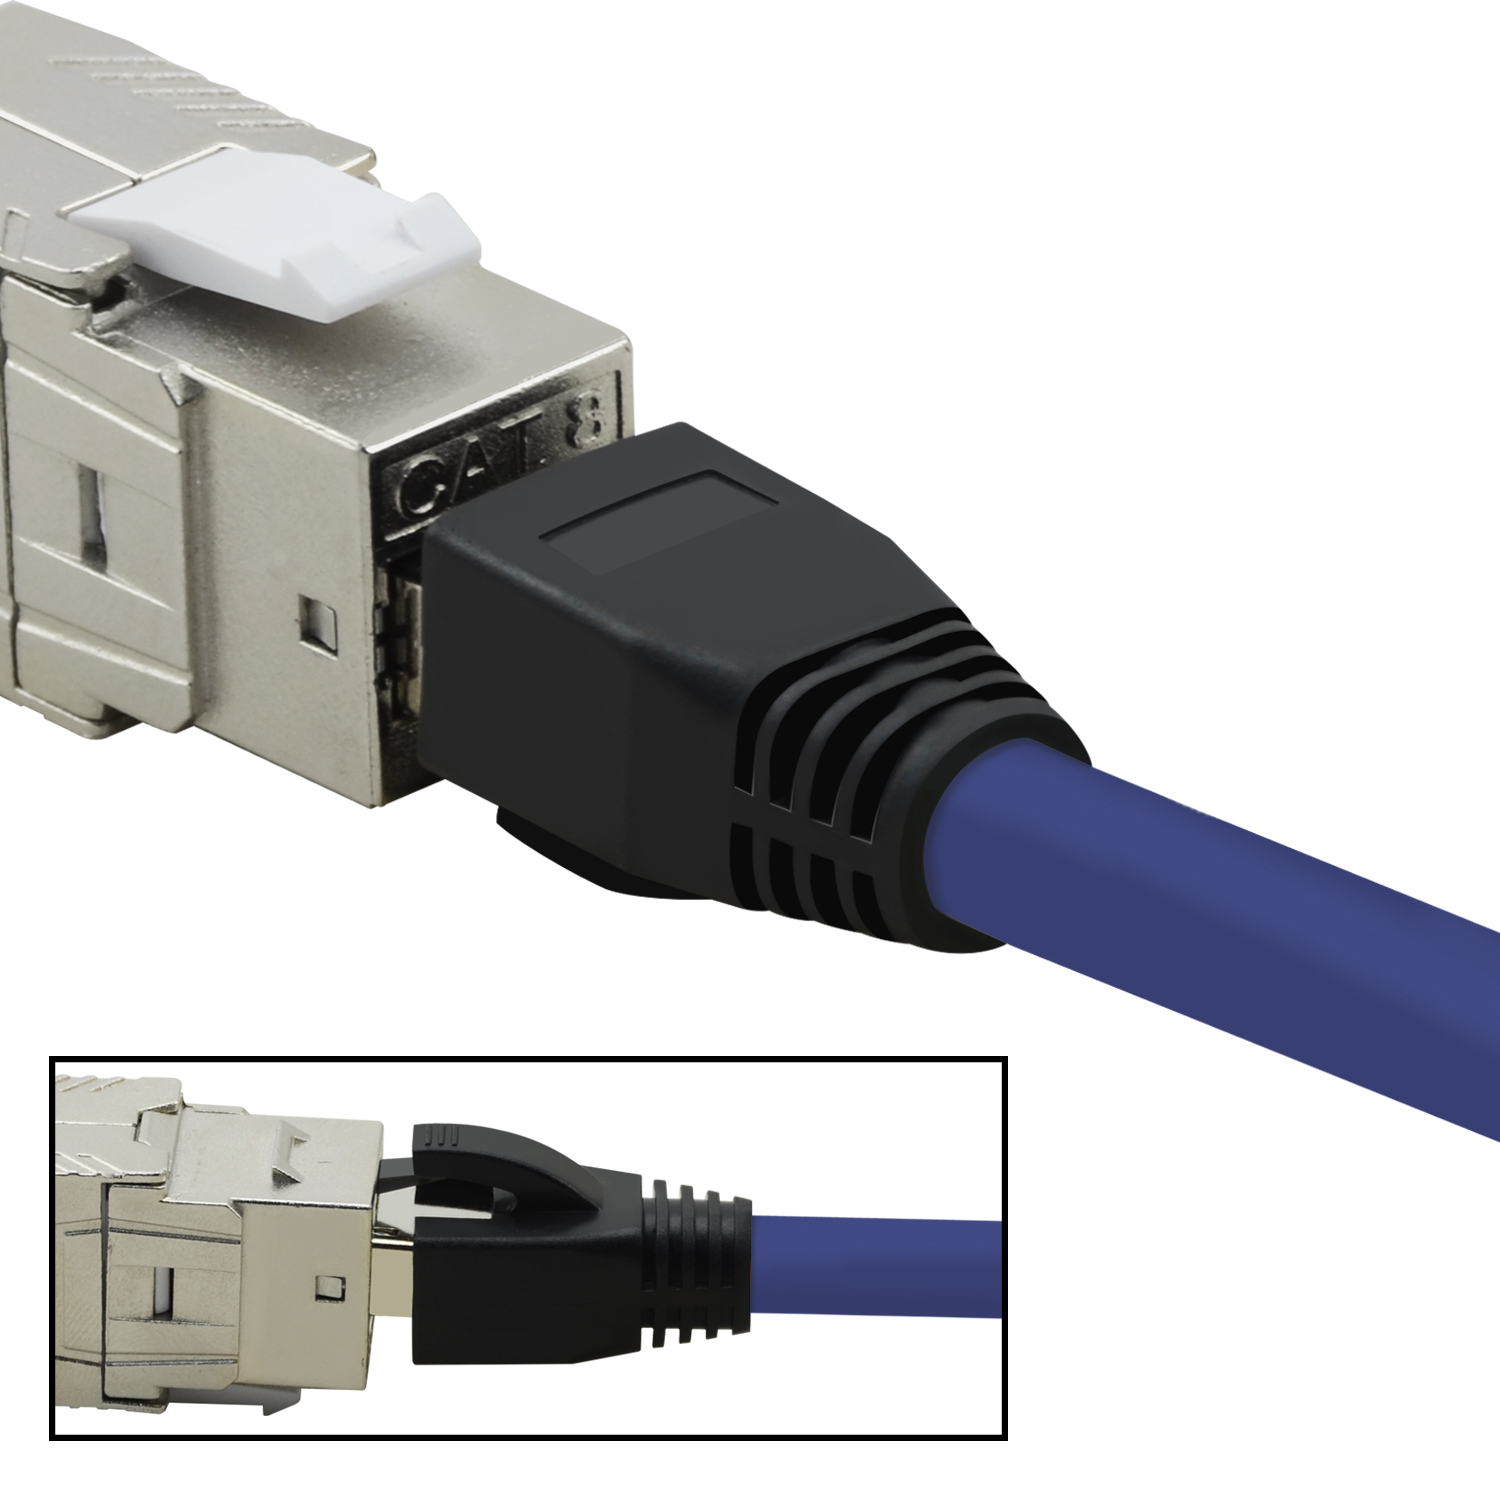 Pack 2 40 / Patchkabel TPFNET 5er Netzwerkkabel, S/FTP Netzwerkkabel GBit, violett, 2m m